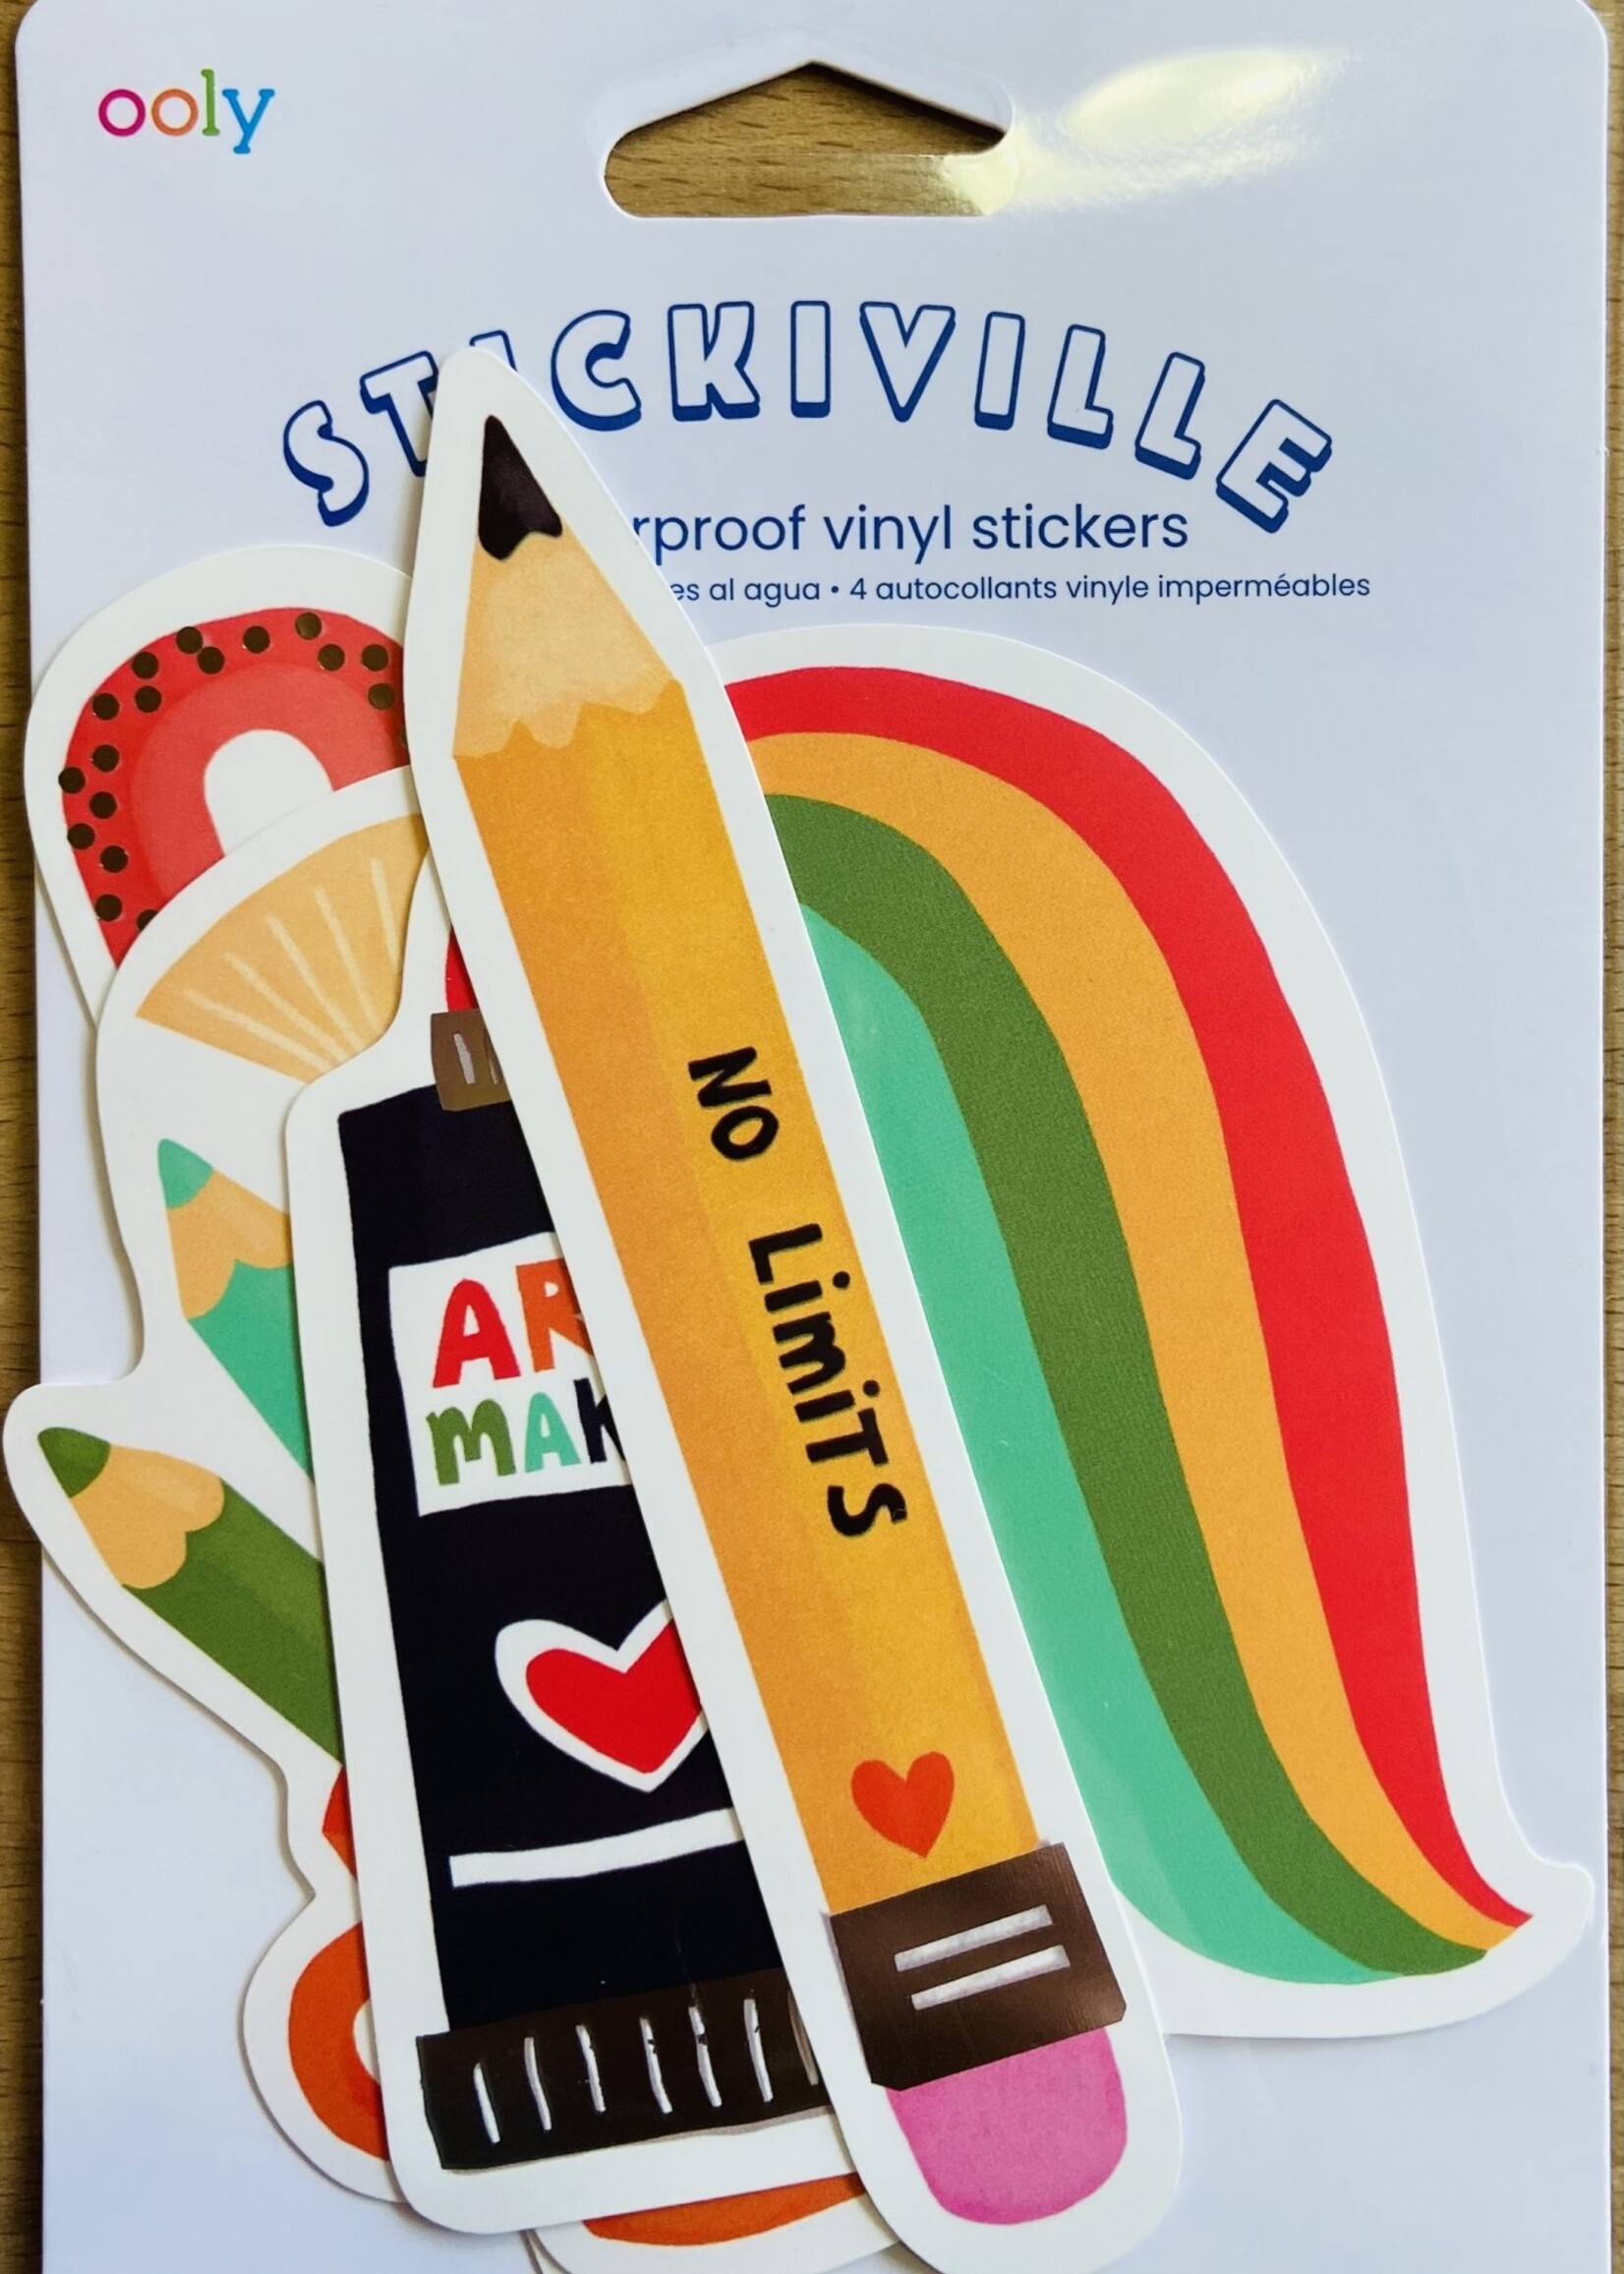 Stickiville Stickers - Art Maker